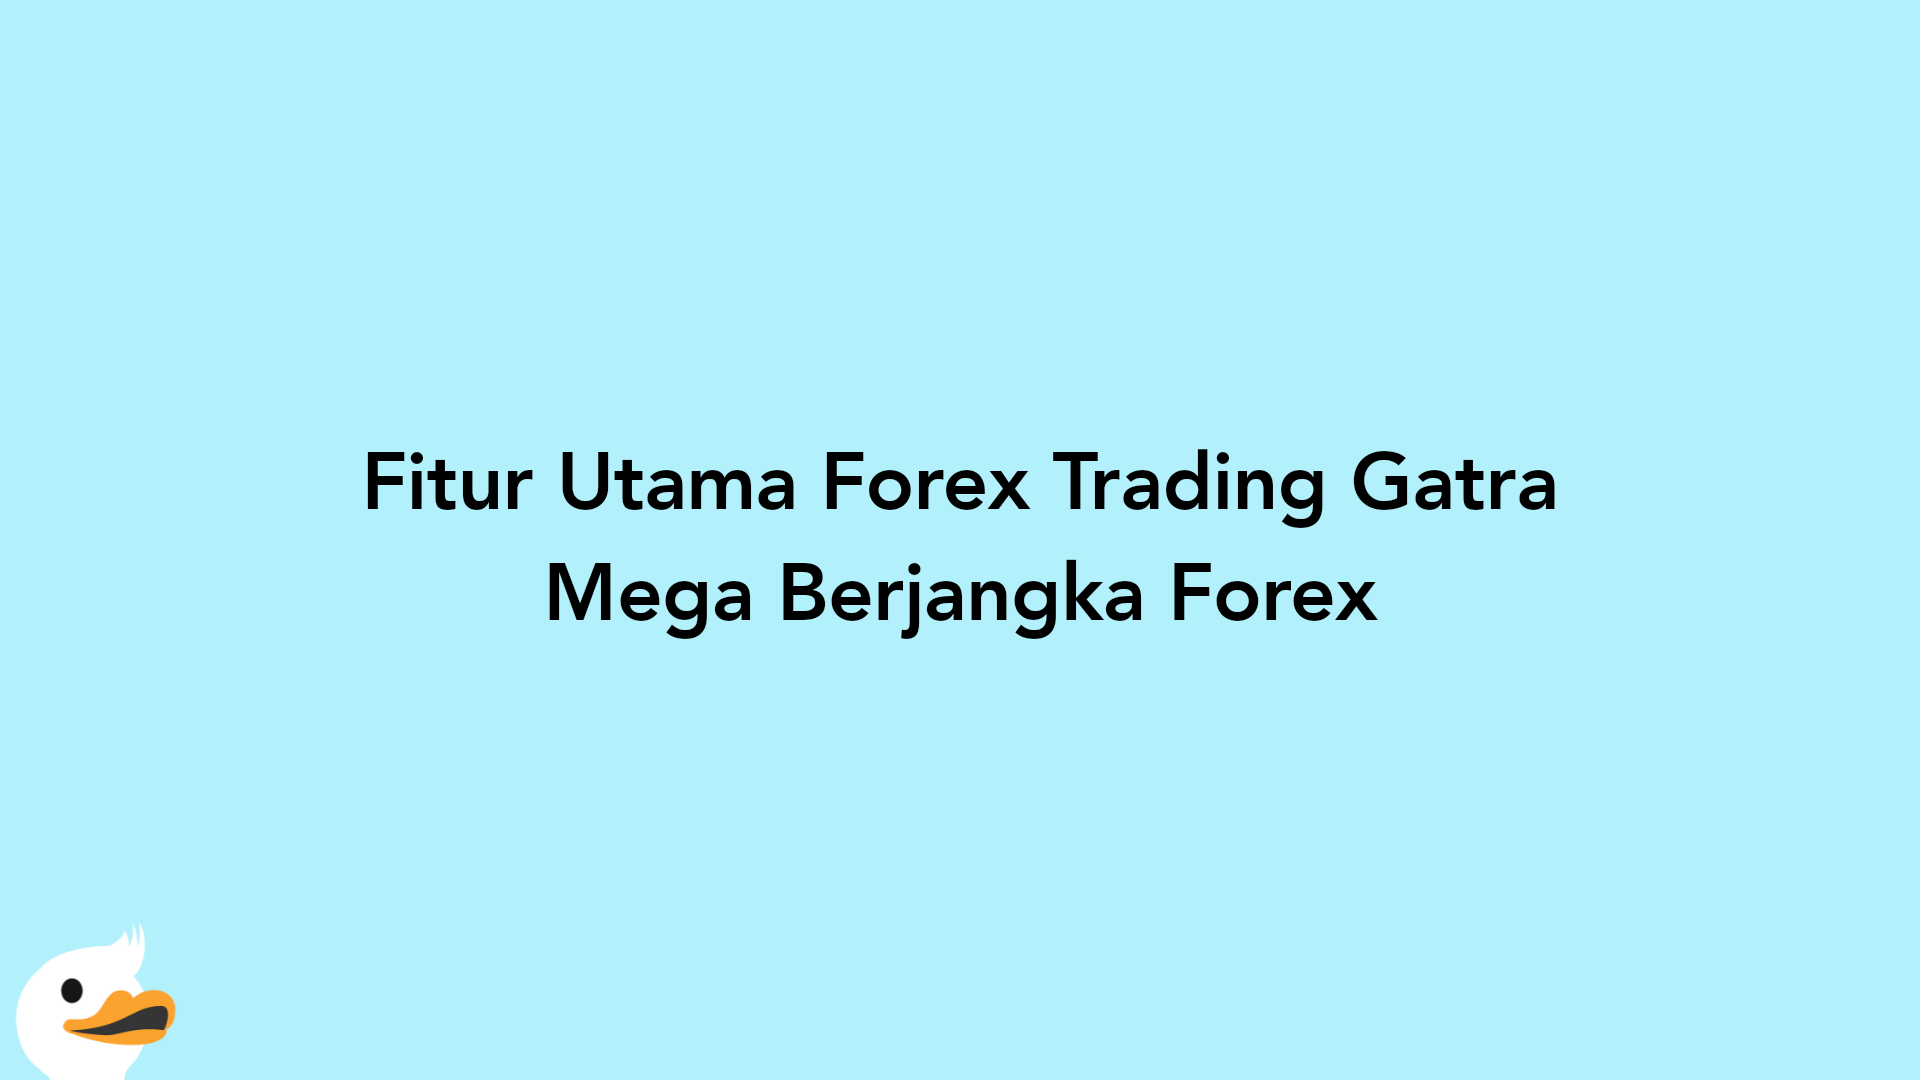 Fitur Utama Forex Trading Gatra Mega Berjangka Forex